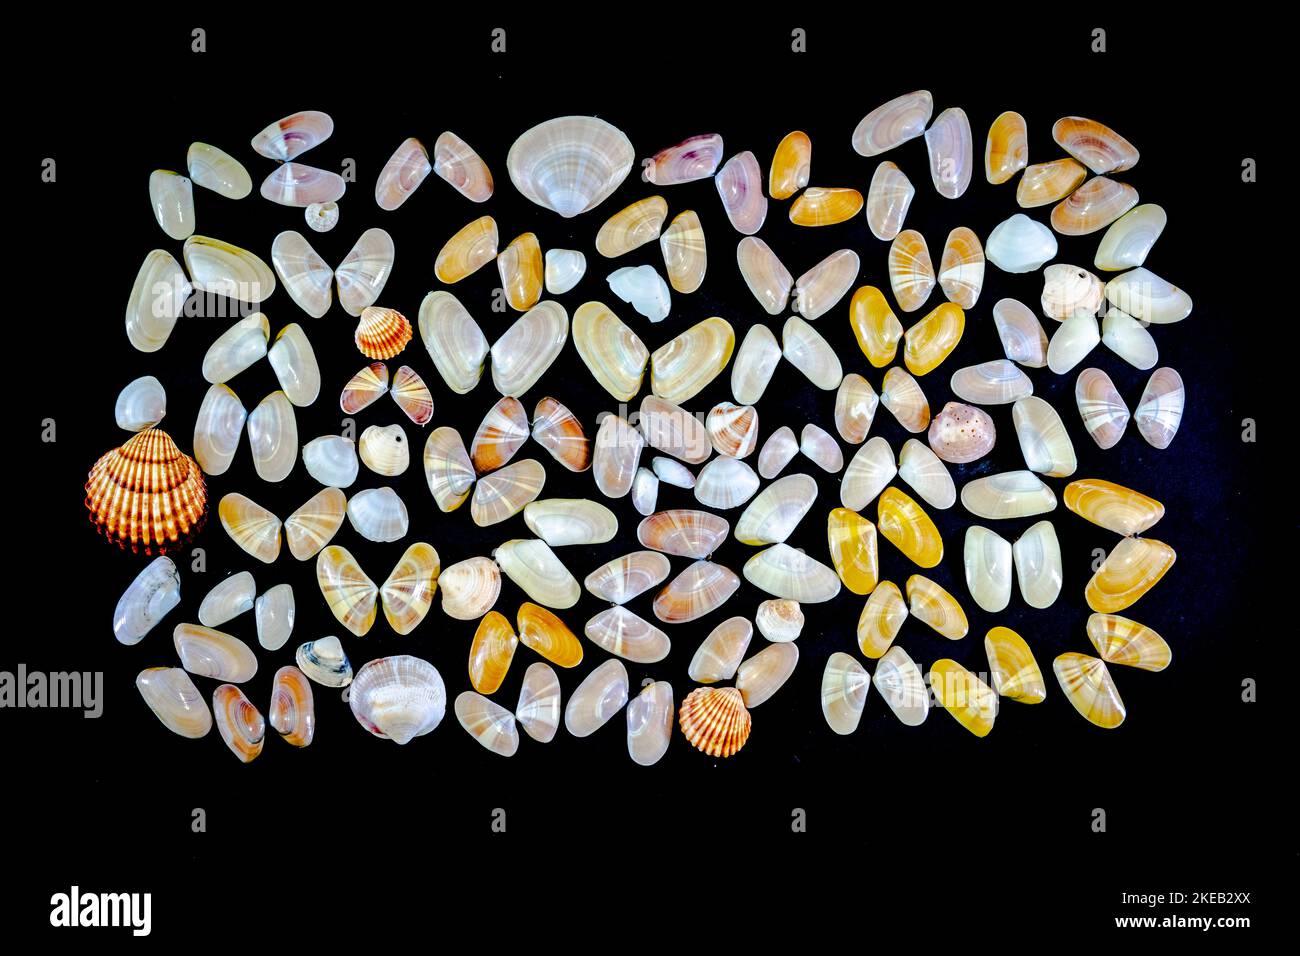 Collection de mollusques Donax variabilis ou coquina de palourdes d'eau salée coquillages ouverts et coquillages. Macro-photographie dans un arrière-plan sombre d'une variété de dif Banque D'Images